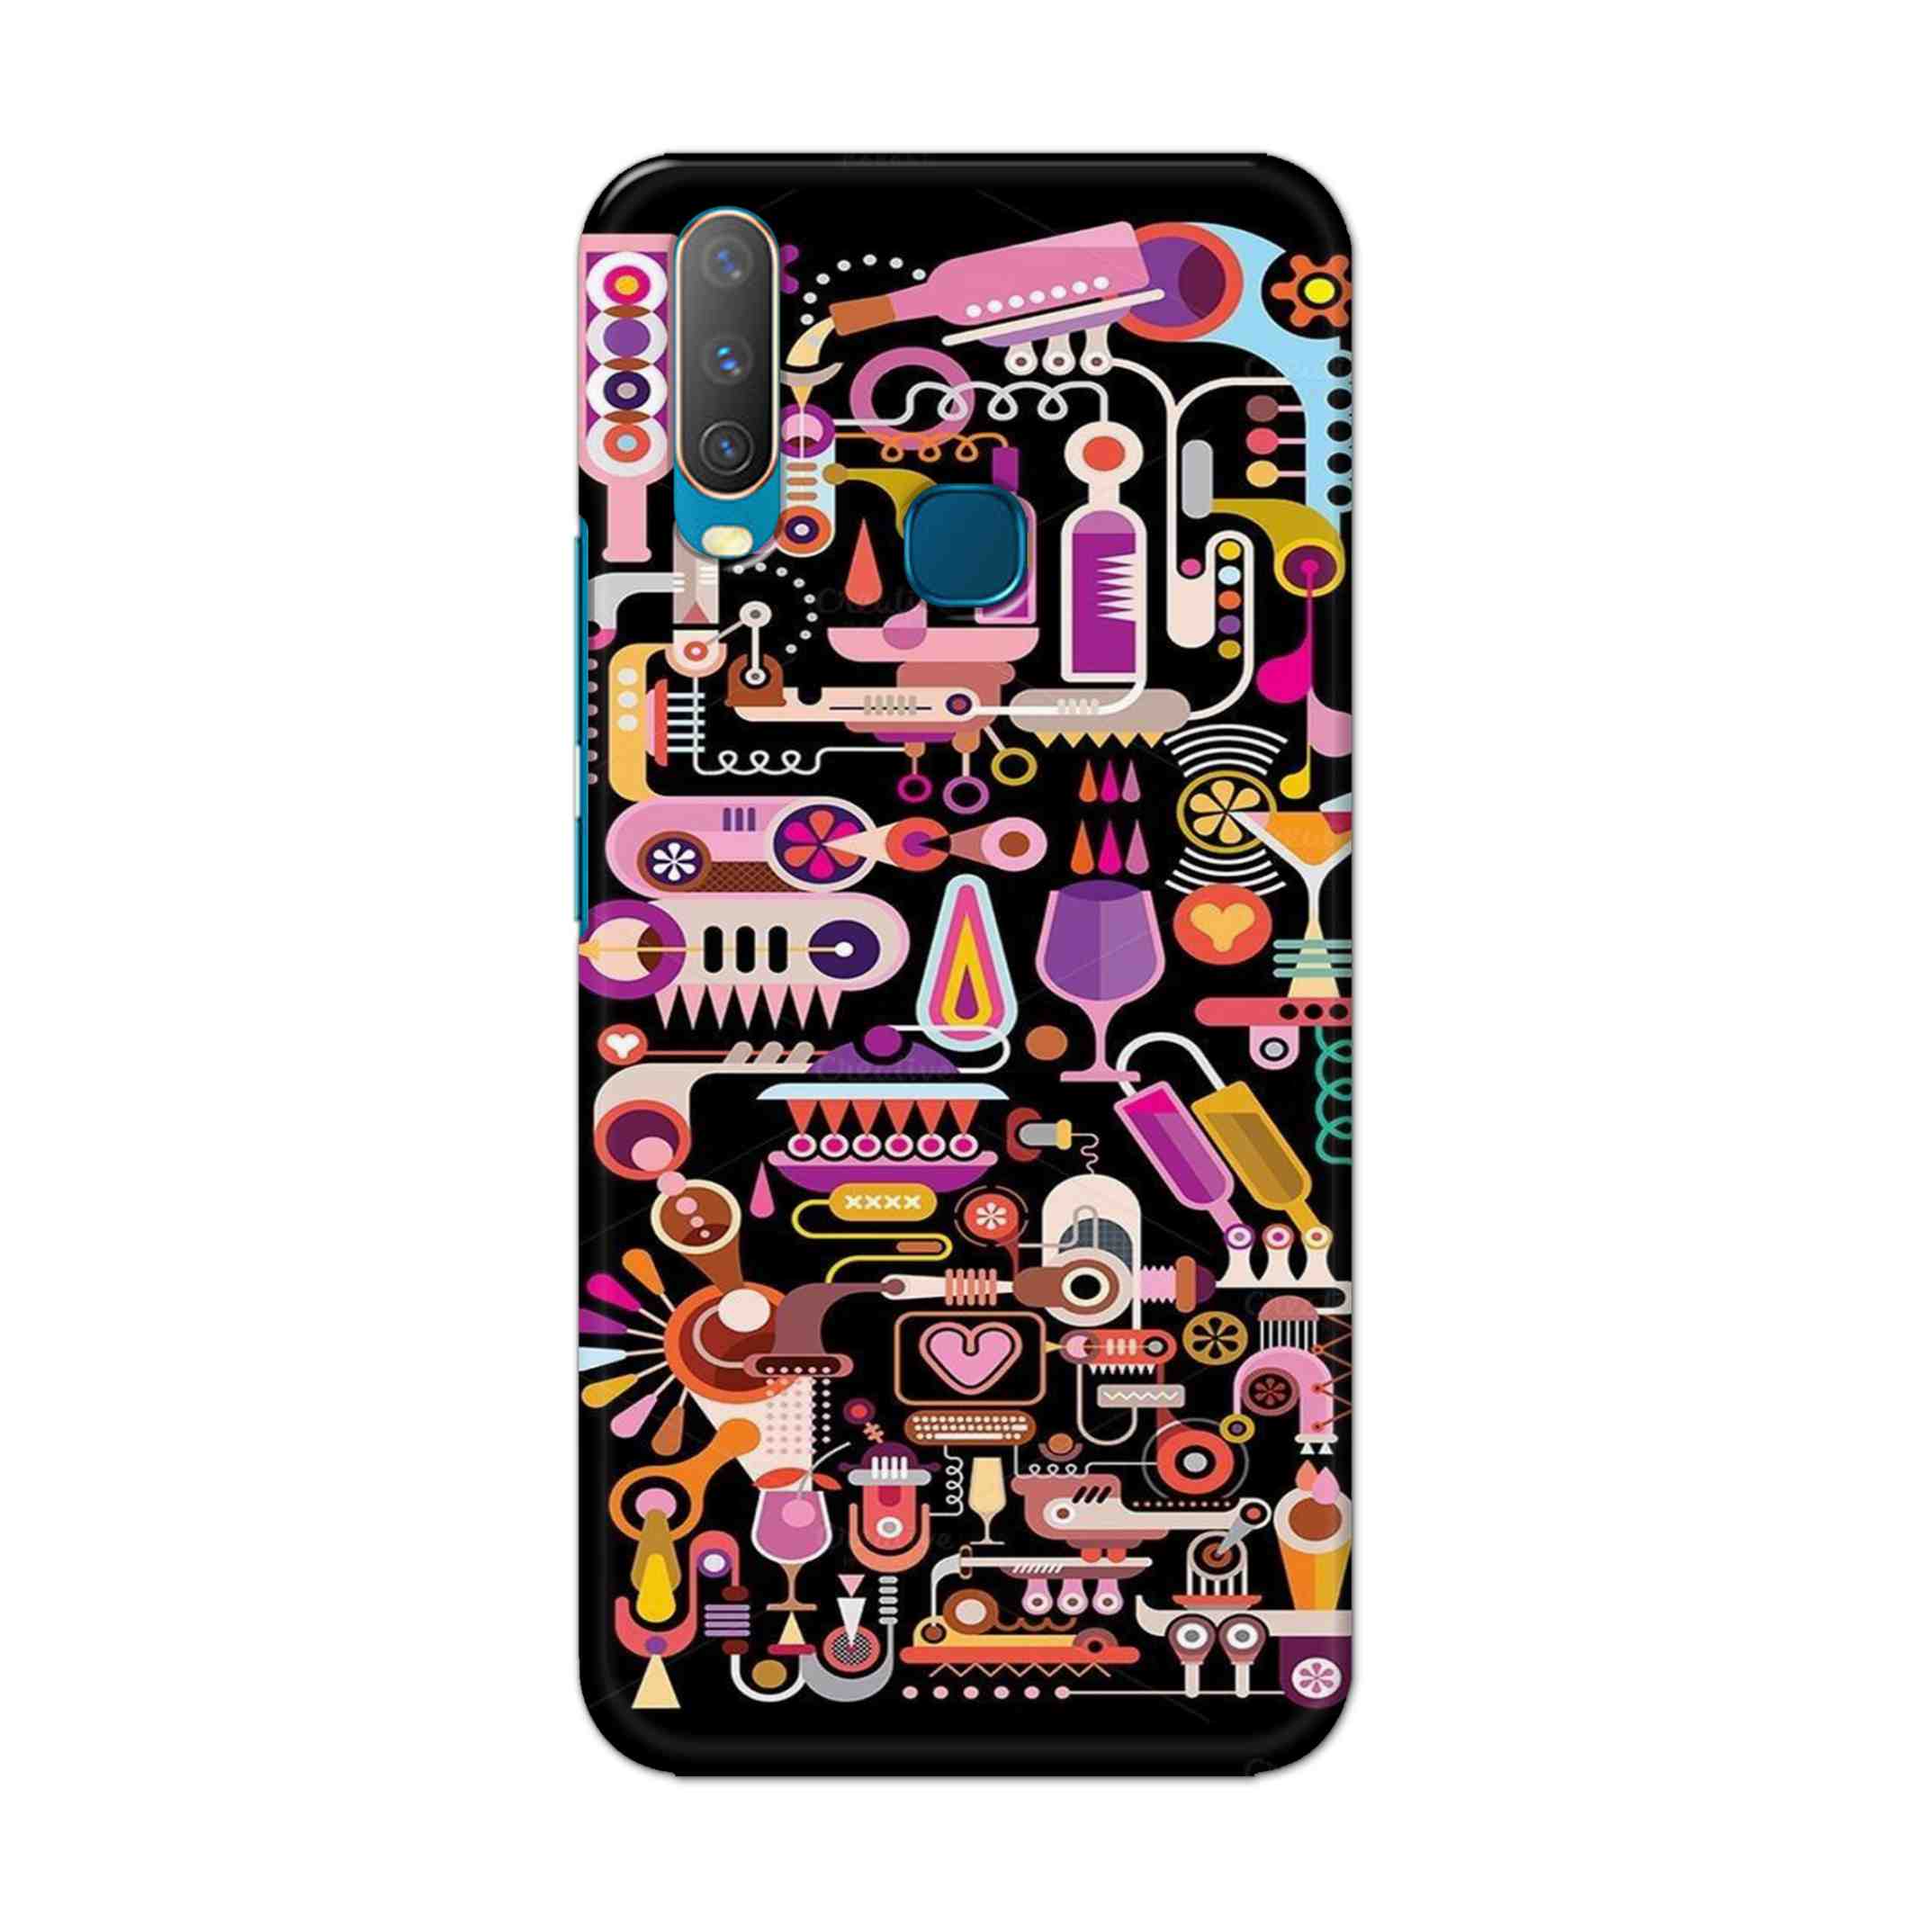 Buy Lab Art Hard Back Mobile Phone Case Cover For Vivo Y17 / U10 Online